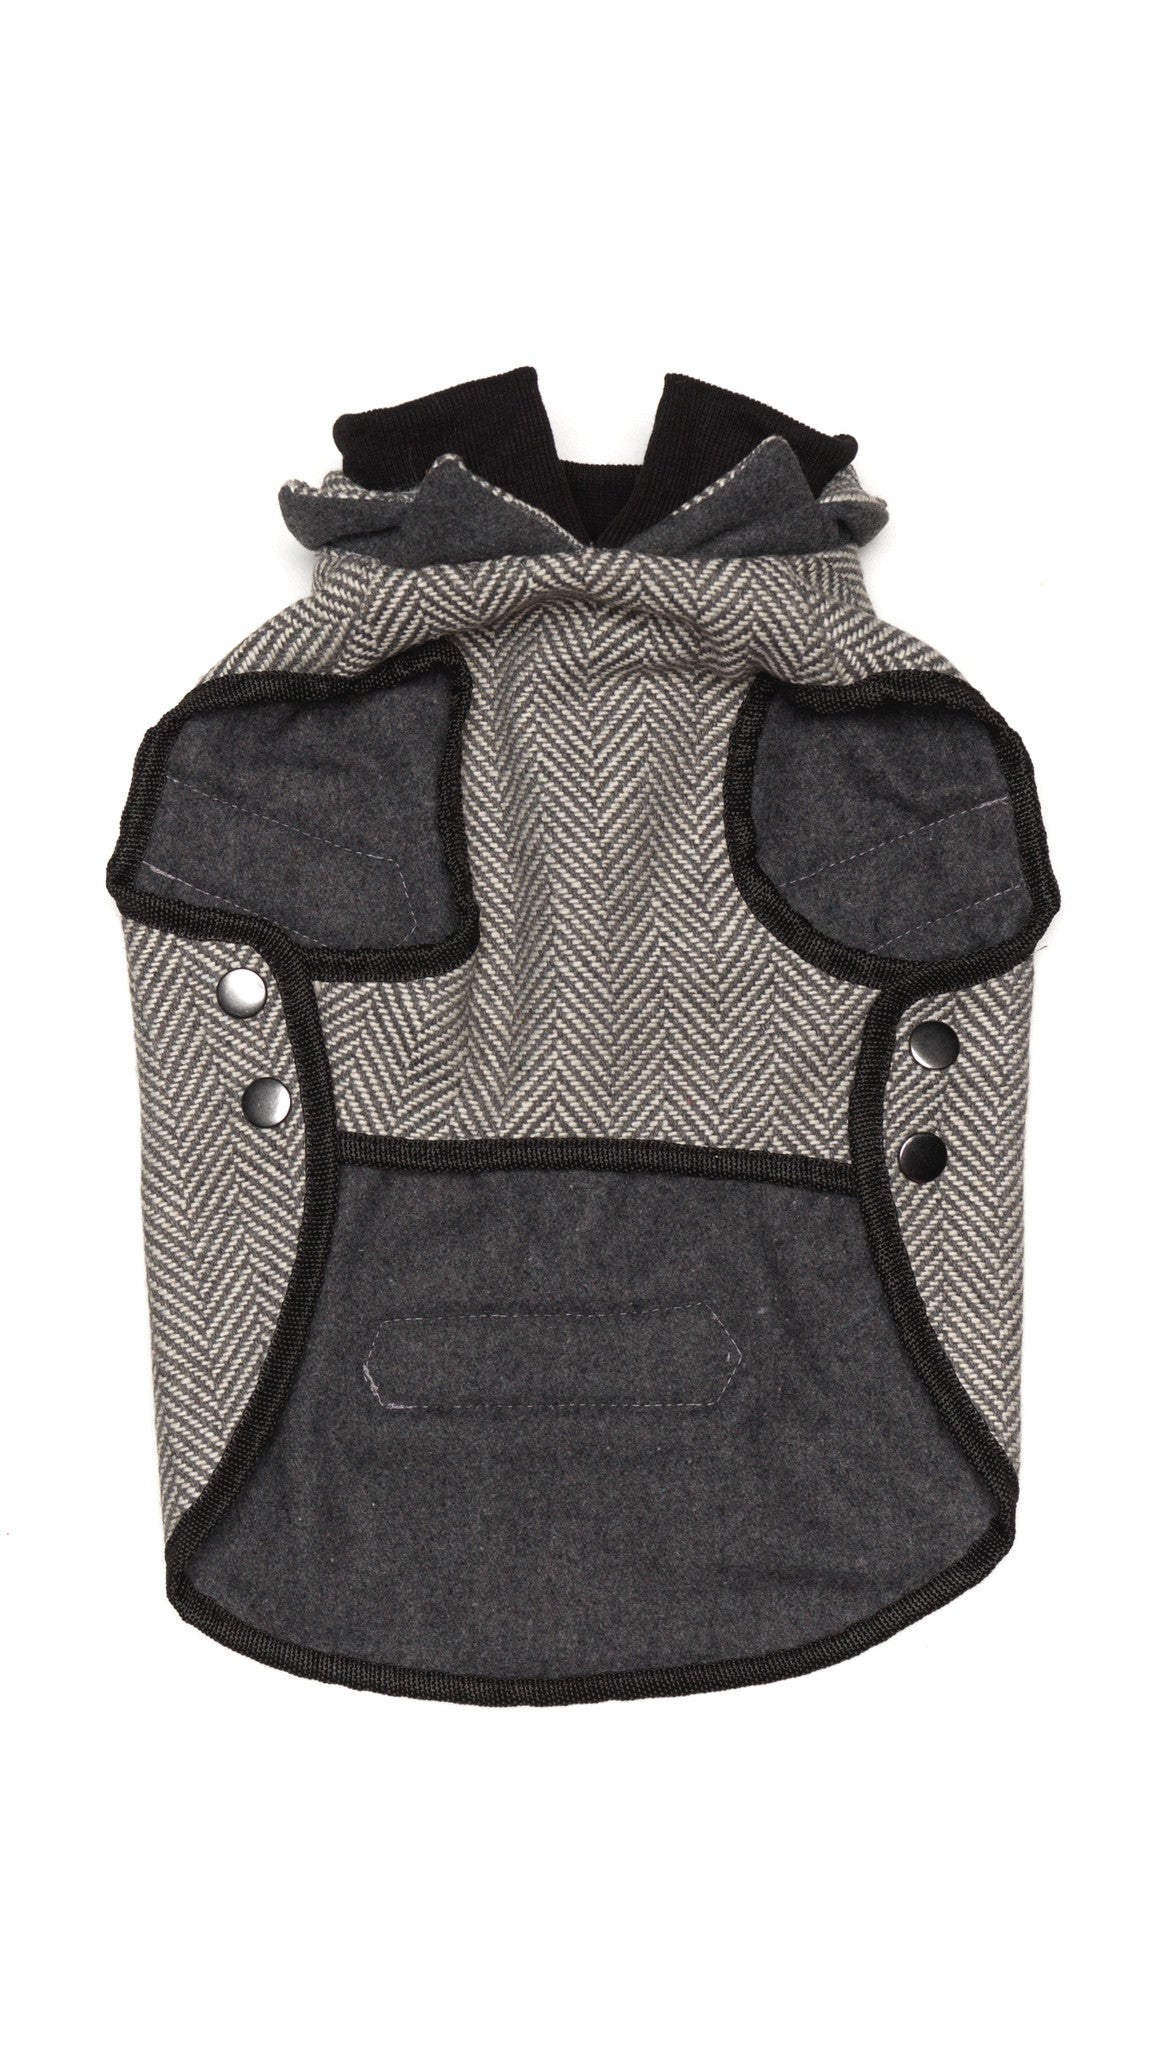 Tweed Knit Dog Jacket | Winter Warrior Dog Coat | Warm & Comfortable